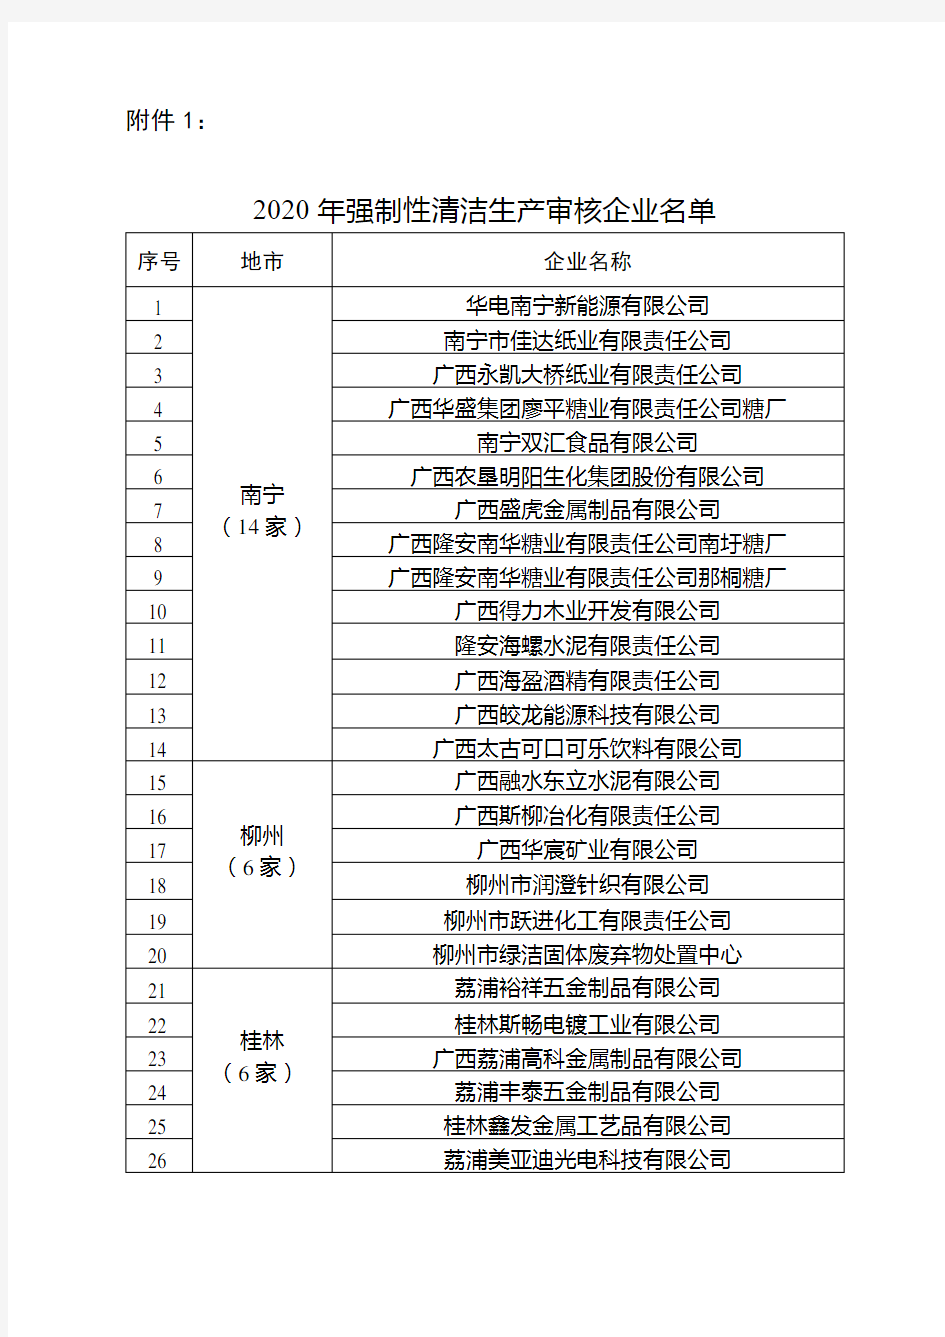 2020年强制性清洁生产审核企业名单【模板】